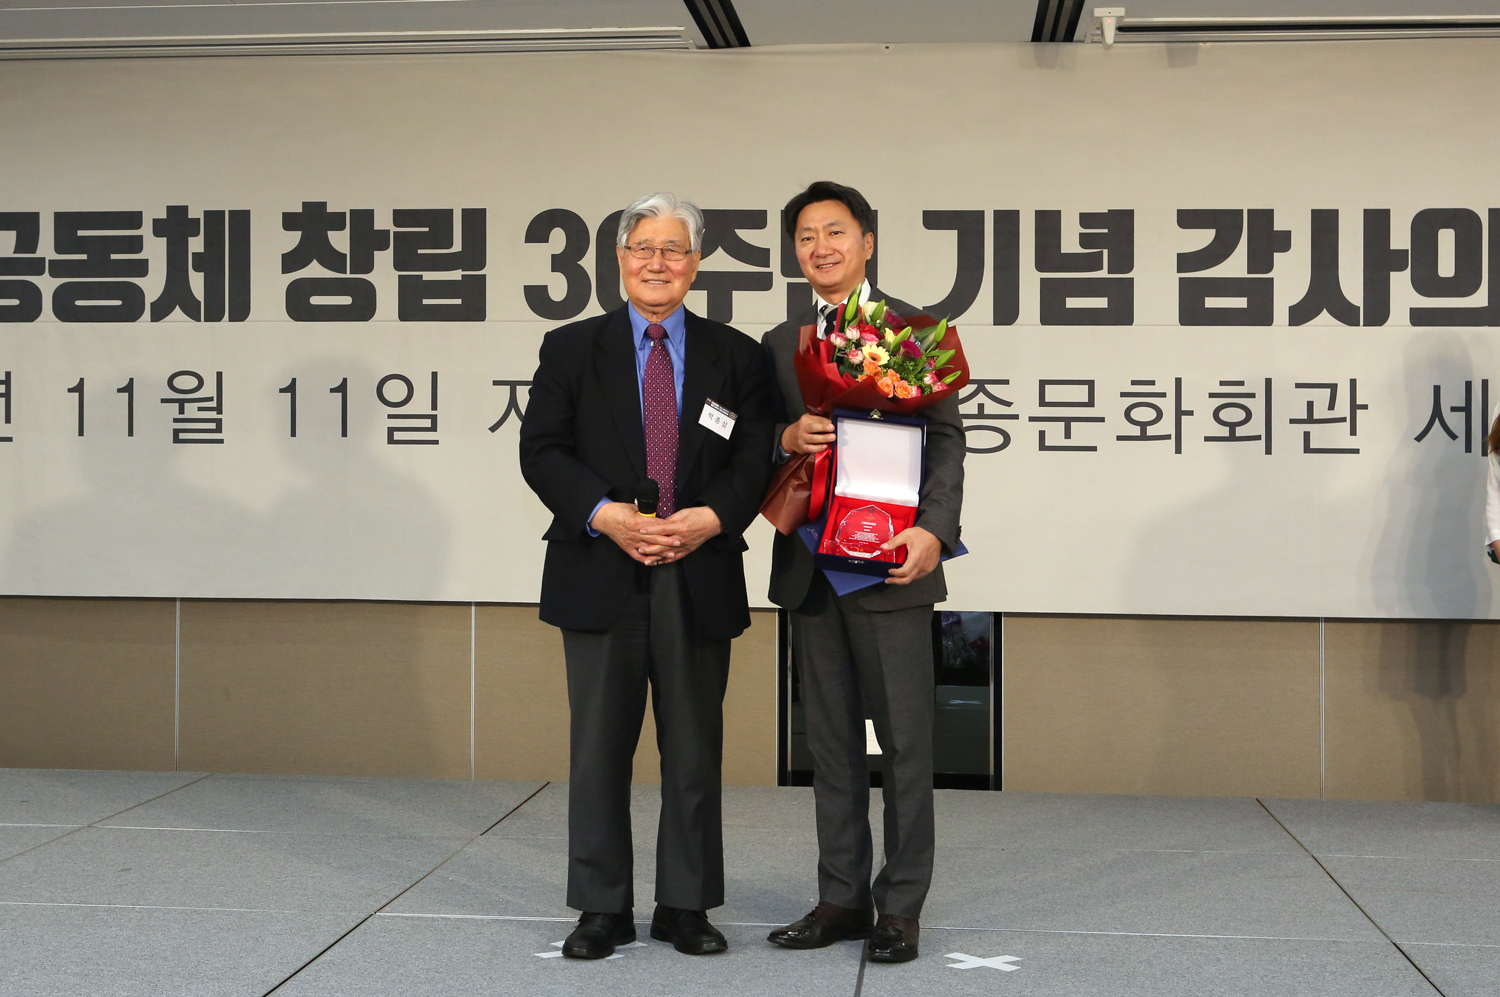 좌측부터 (다일봉사대상 심사위원장) 박종삼 전 한국월드비전 회장, 최호진 동아제약 사장